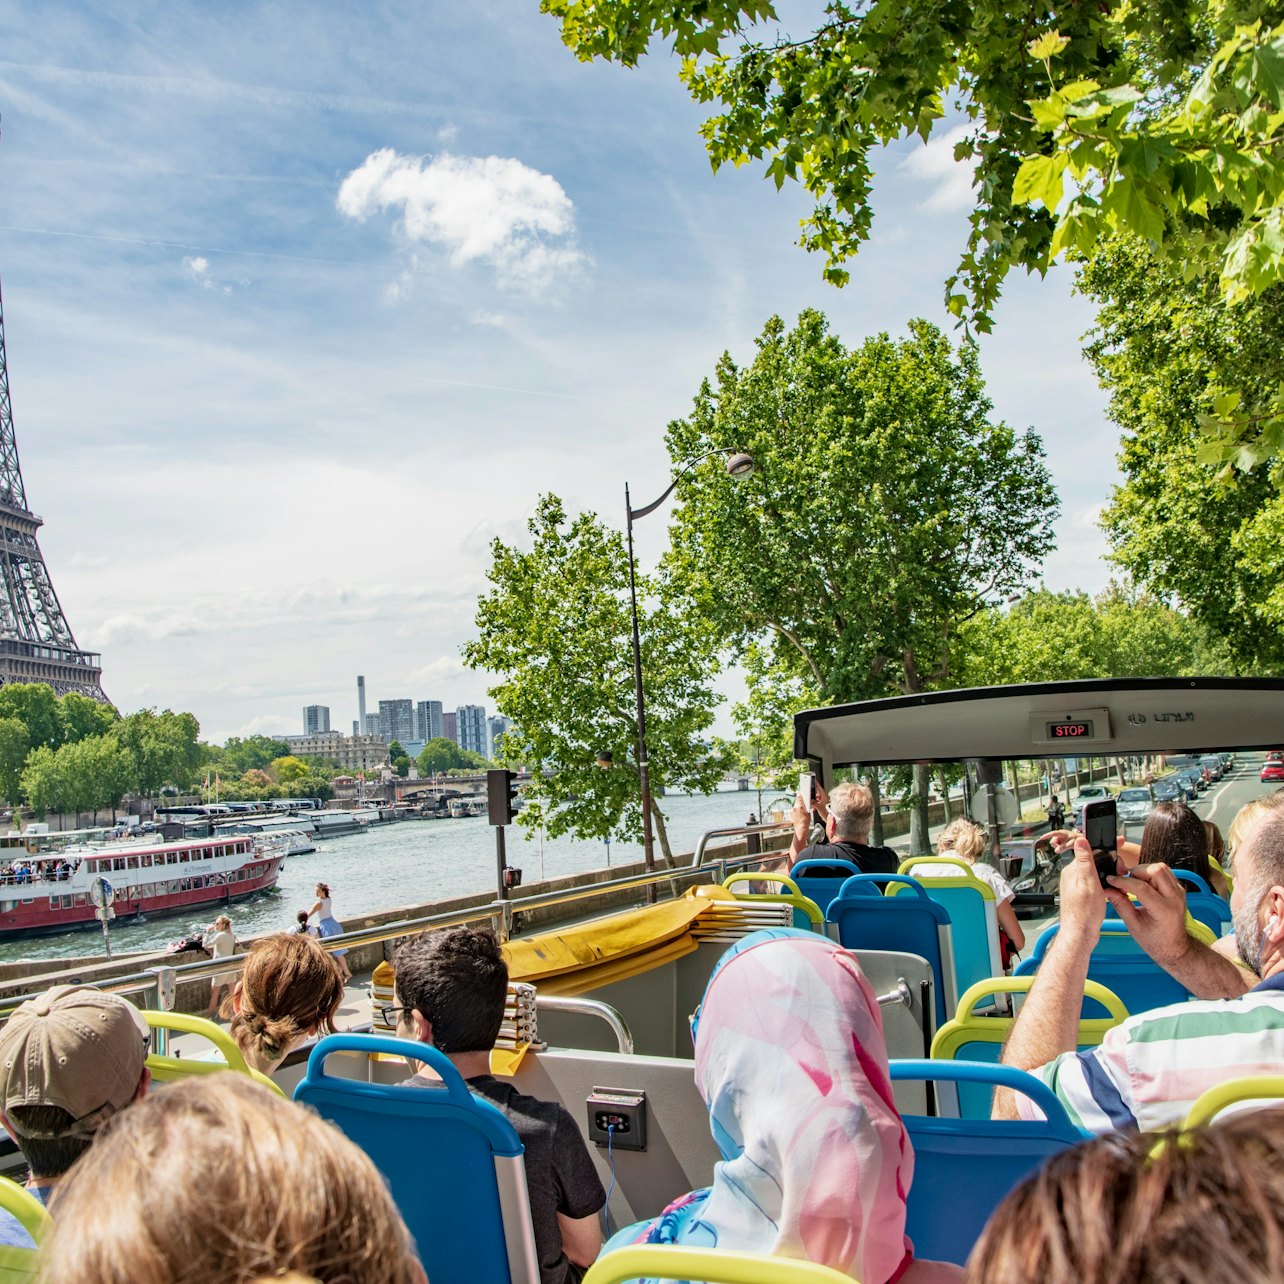 Tootbus París: Recorrido en Autobús Exprés Hop-on Hop-off de 2 Horas - Alojamientos en Paris